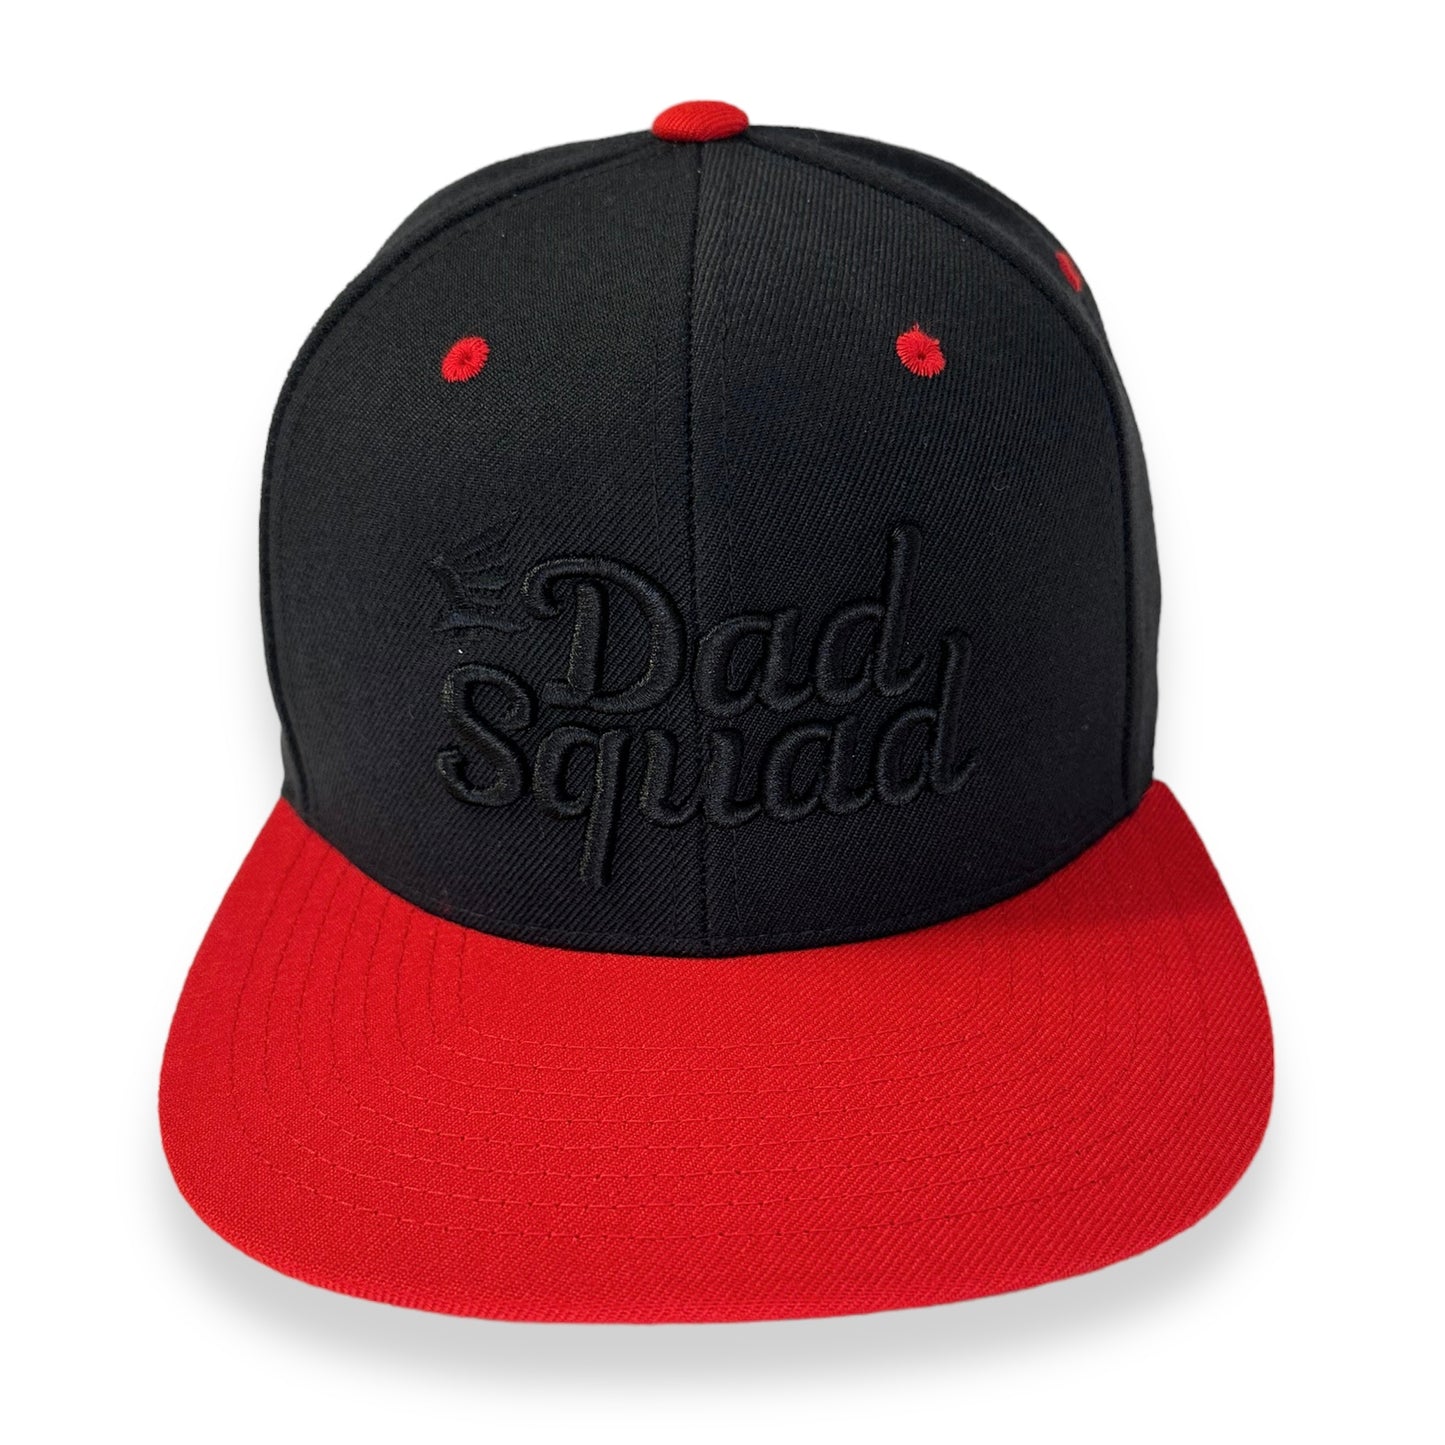 Dad Squad Flat Bill Cap - Black/Red